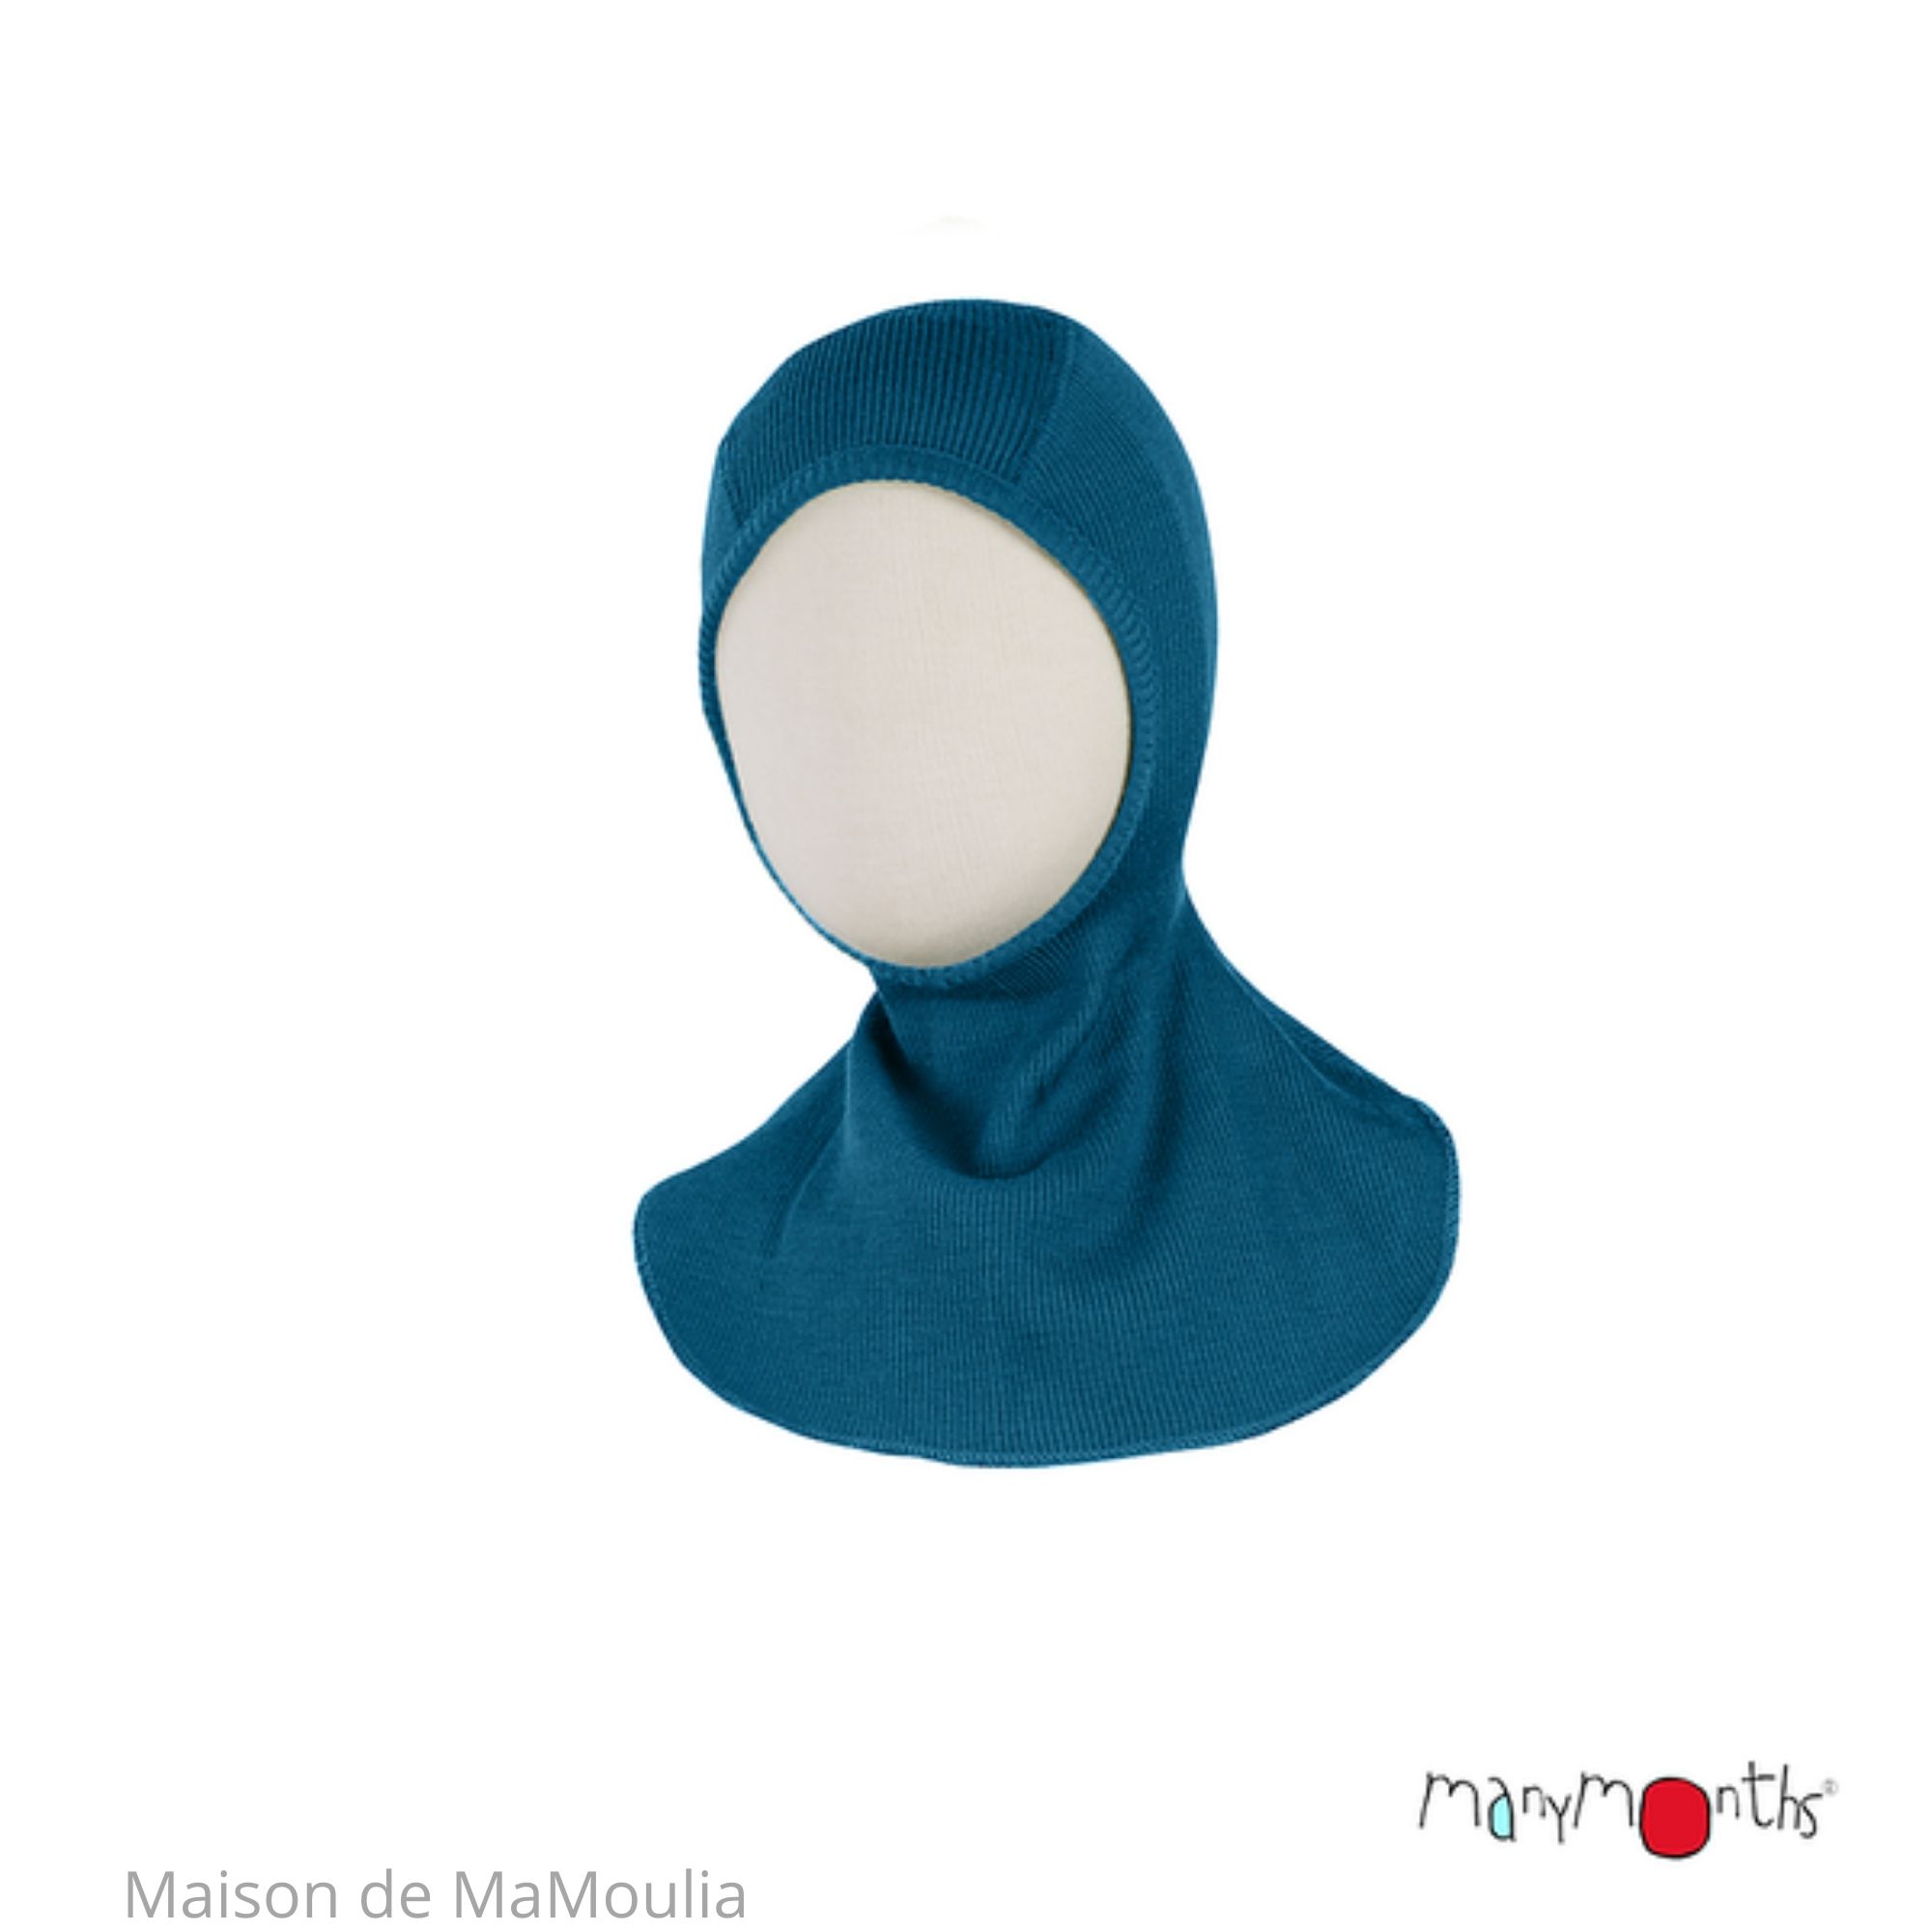 cagoule-bebe-enfant-evolutive-pure-laine-merinos-manymonths-maison-de-mamoulia-mykonos-waters-bleu